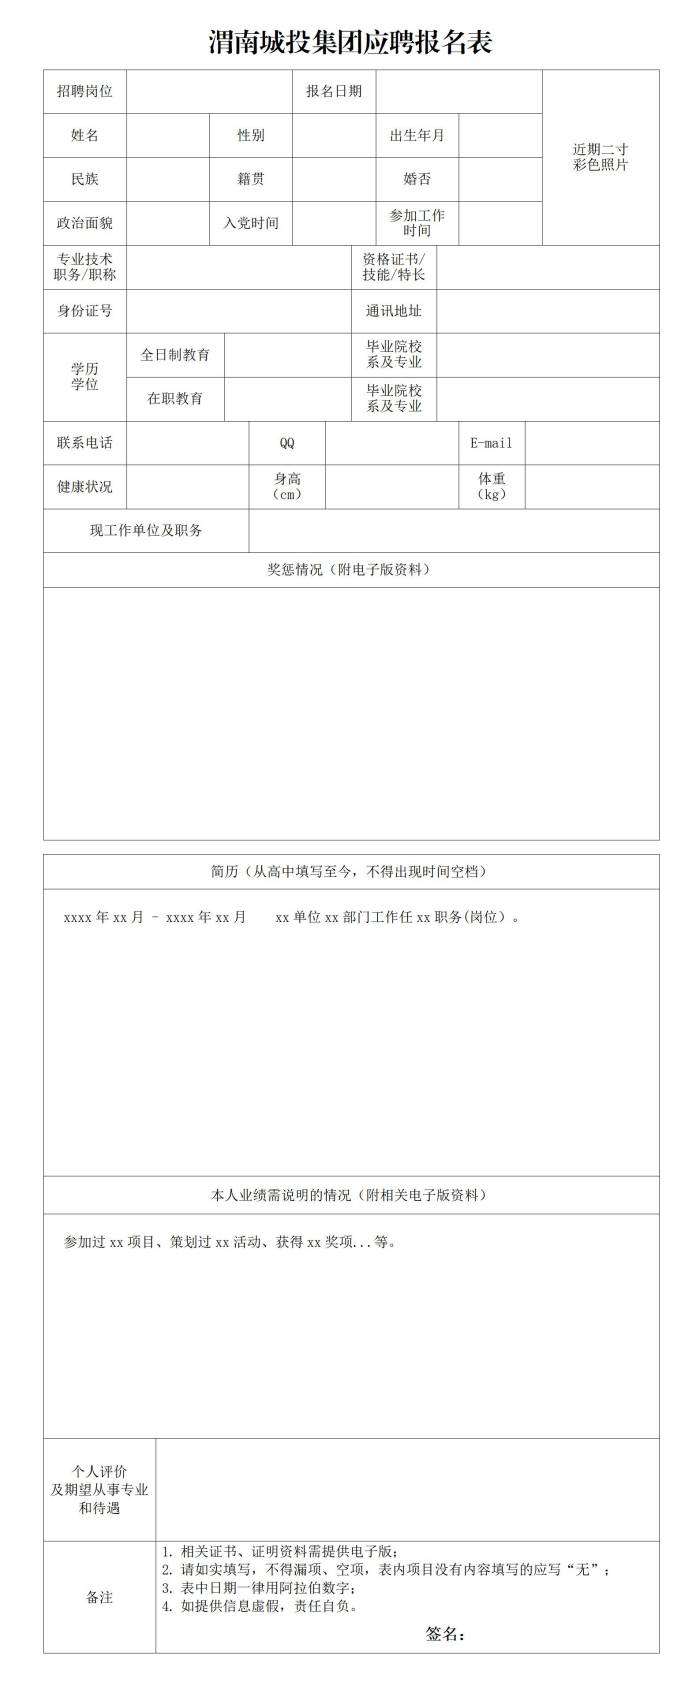 附件2-渭南国贸集团应聘报名表_01(1).jpg